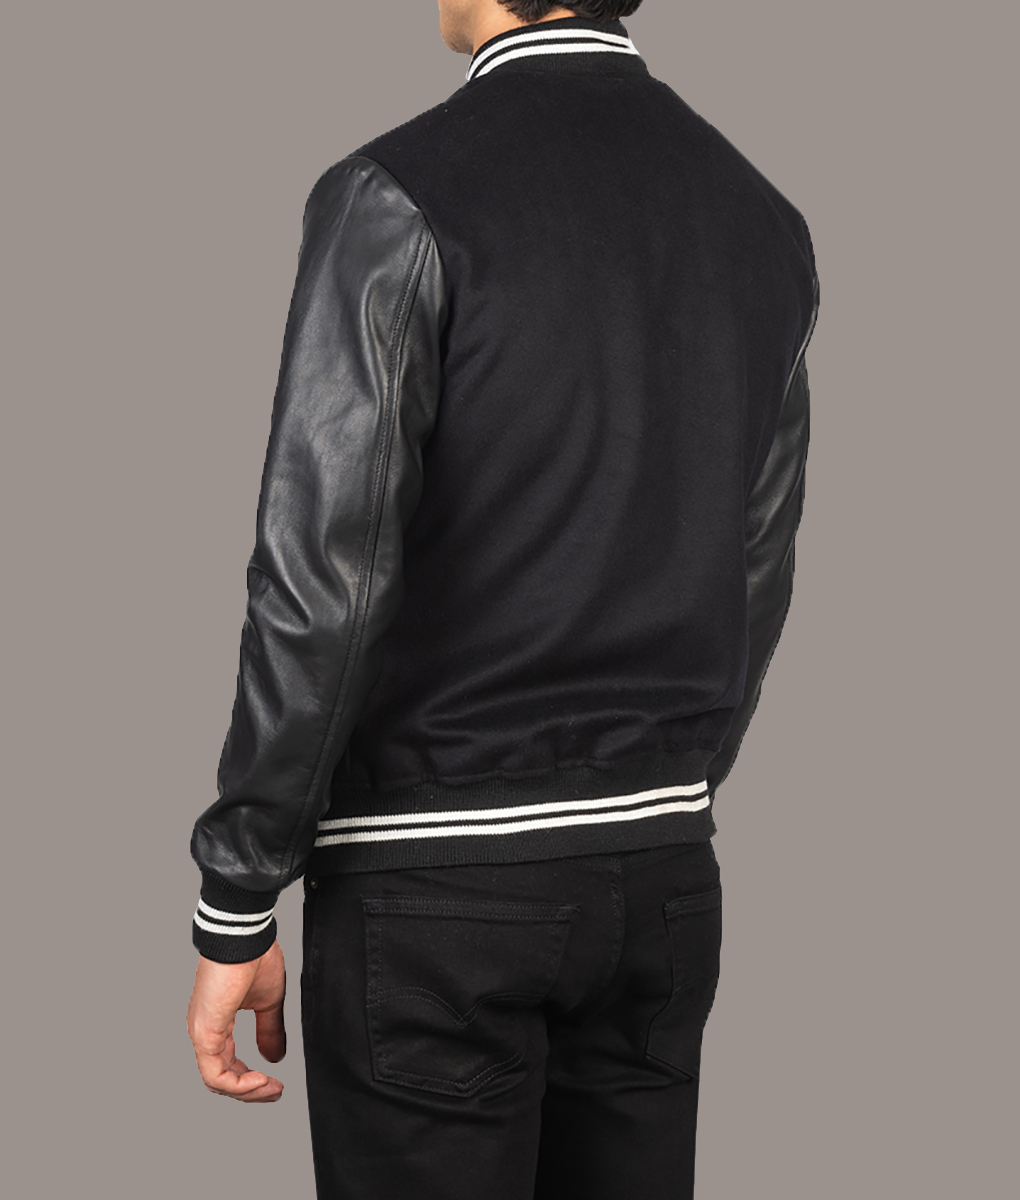 Ryan Gosling Black Varsity Jacket (4)